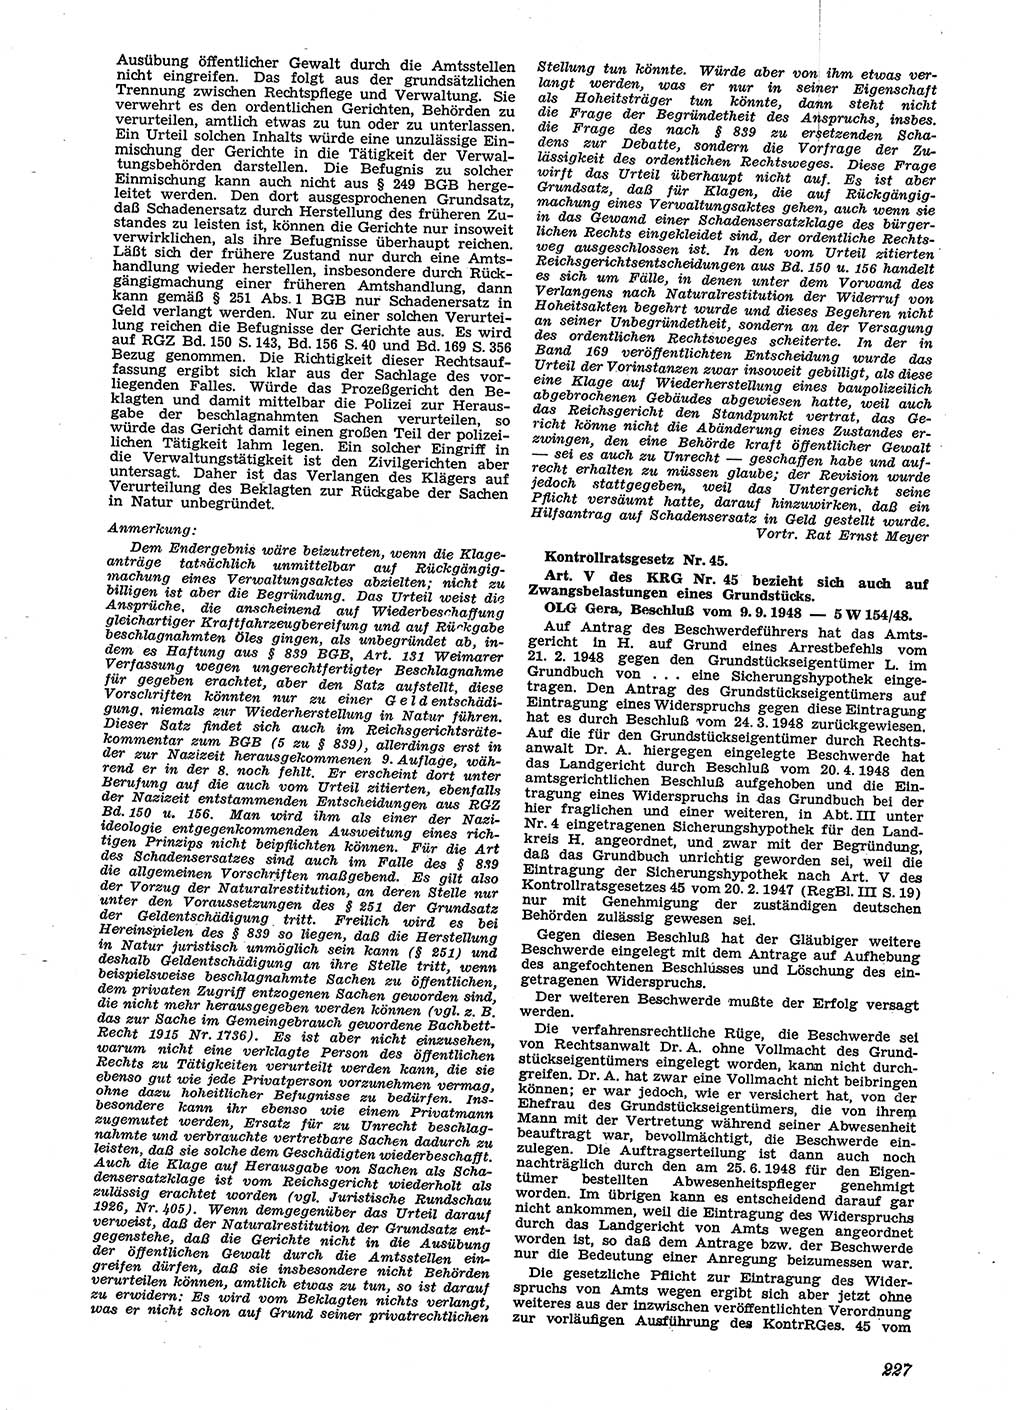 Neue Justiz (NJ), Zeitschrift für Recht und Rechtswissenschaft [Sowjetische Besatzungszone (SBZ) Deutschland], 2. Jahrgang 1948, Seite 227 (NJ SBZ Dtl. 1948, S. 227)